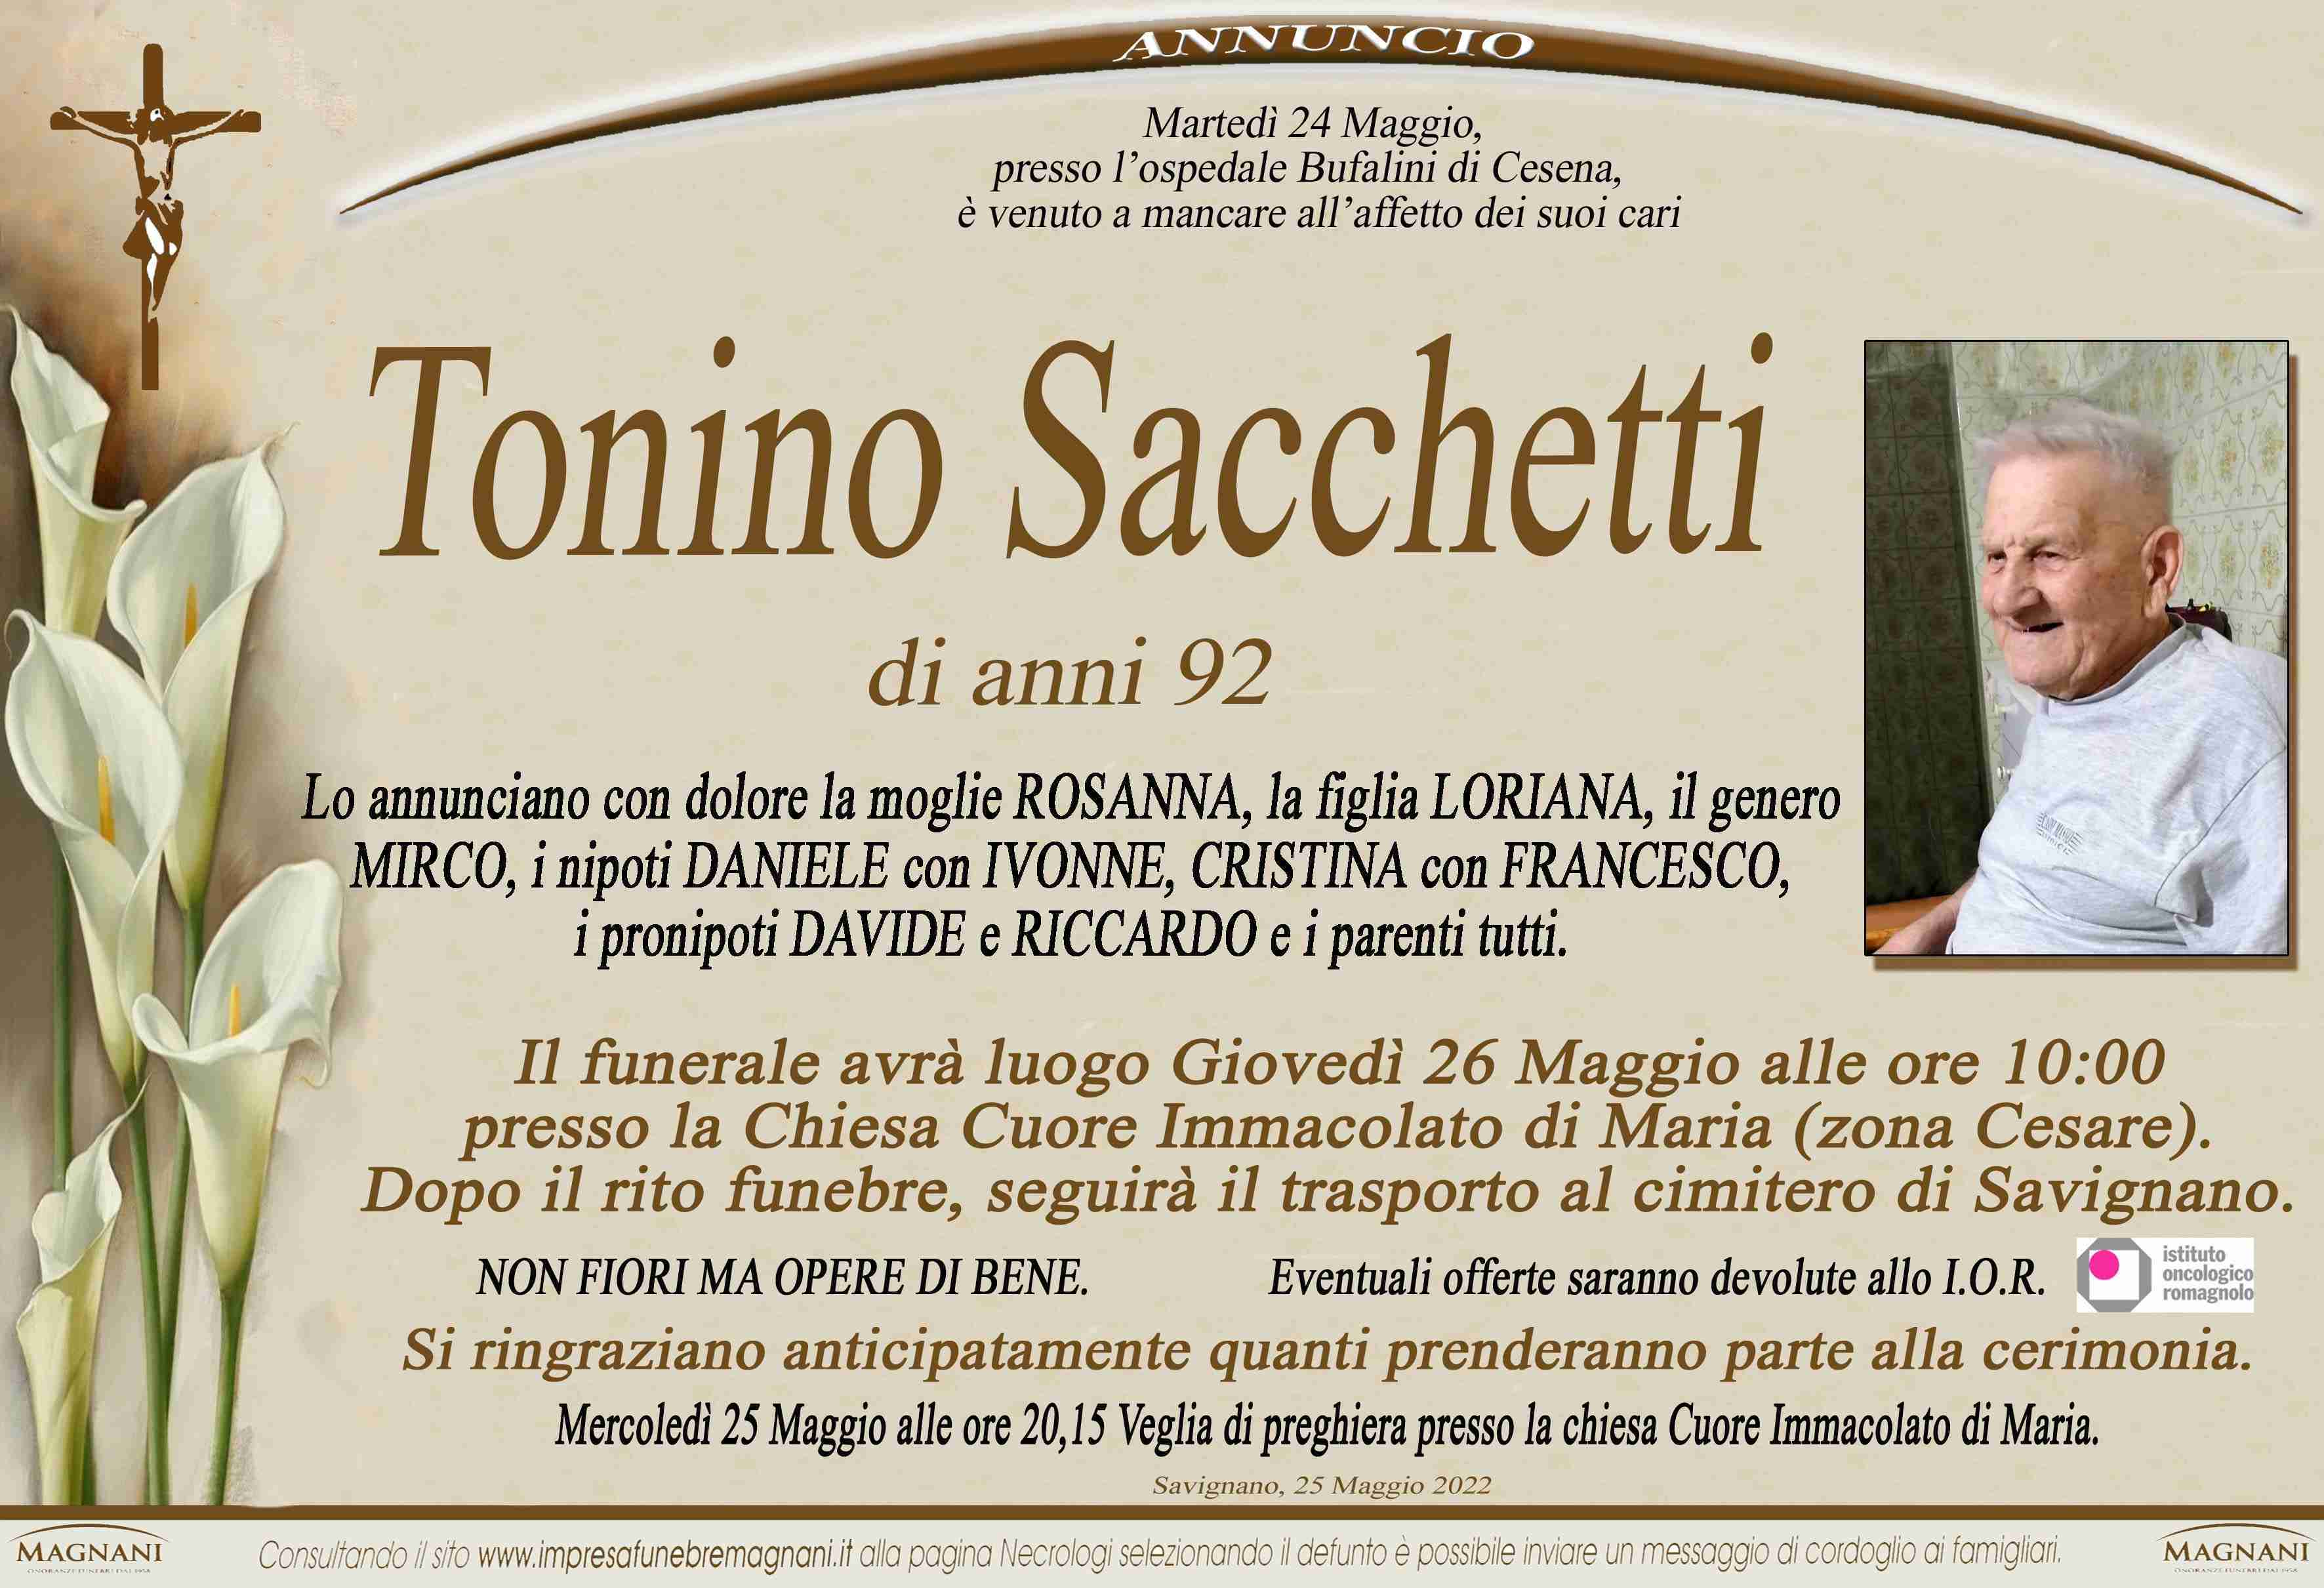 Tonino Sacchetti